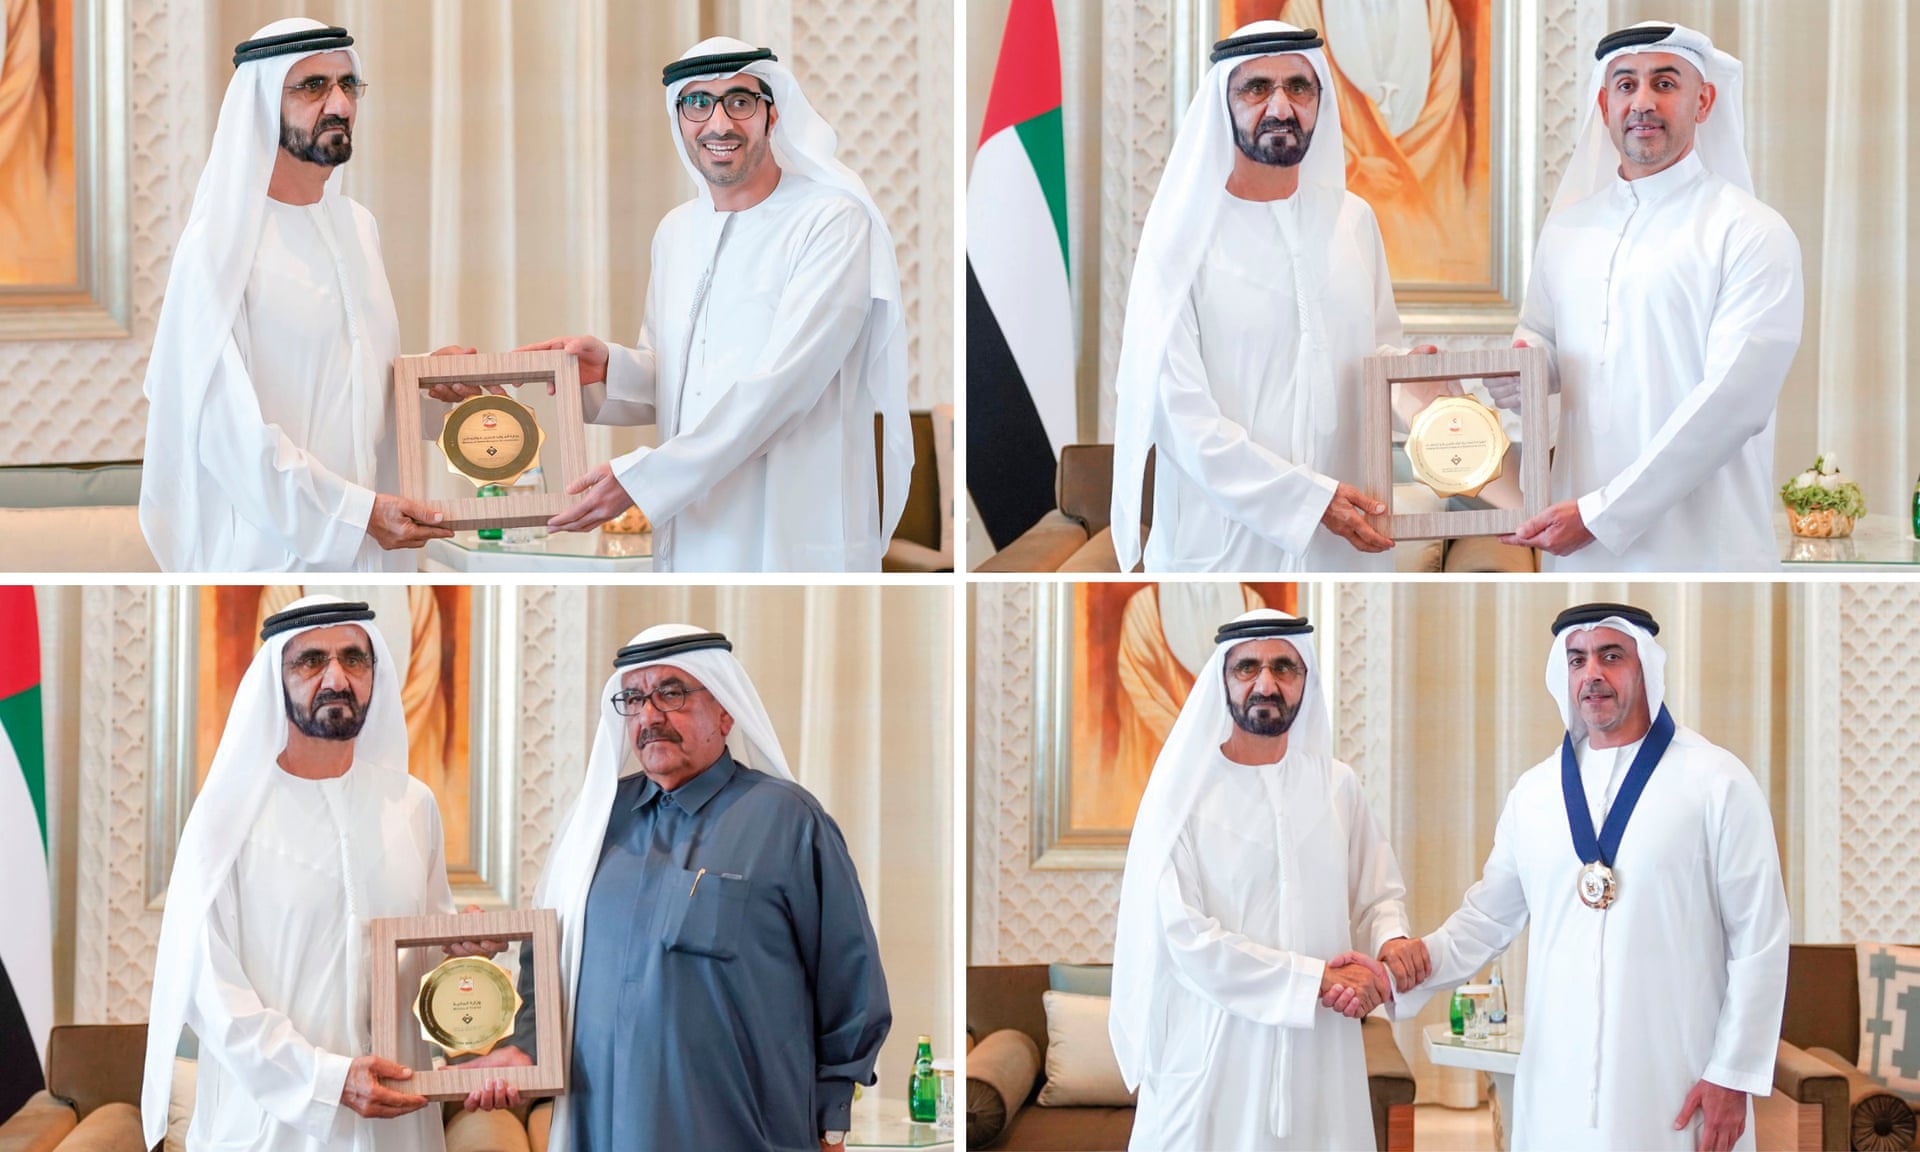 Először osztottak nemi esélyegyenlőségi díjakat az Egyesült Arab Emírségekben, mindet férfiak nyerték